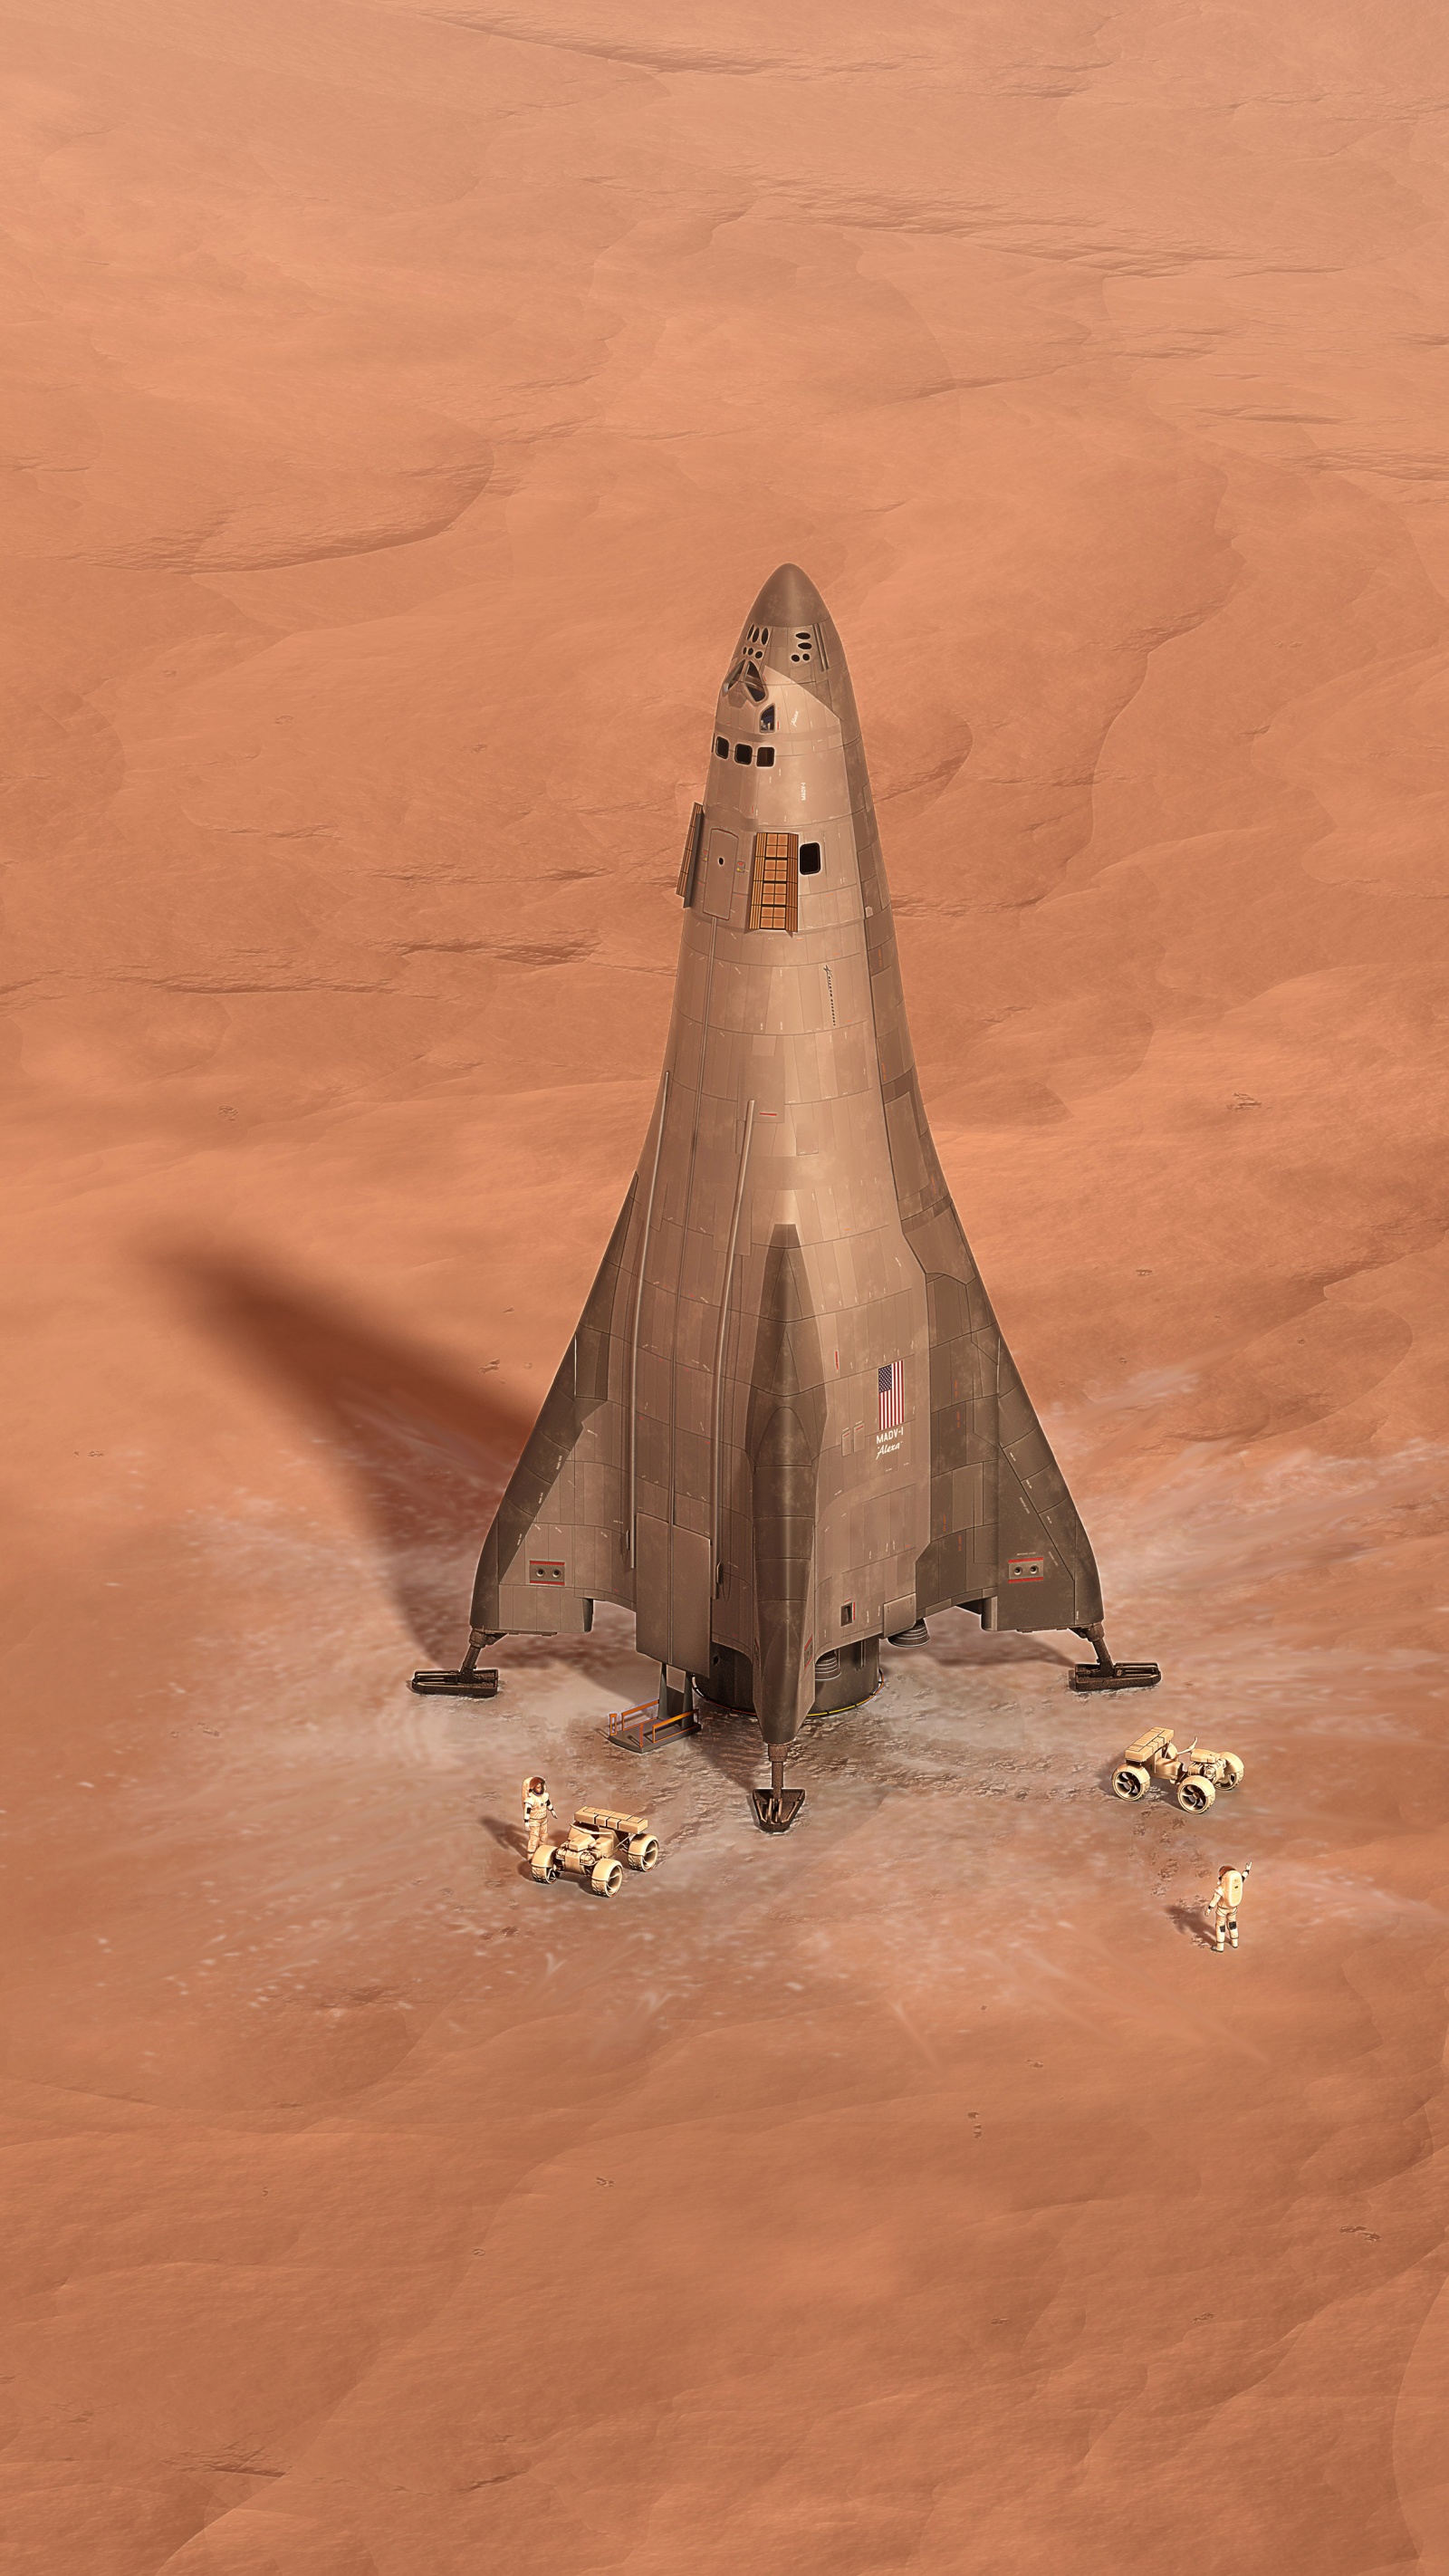 Lockheed Martin показала план марсианской орбитальной станции и спускаемого аппарата - 5